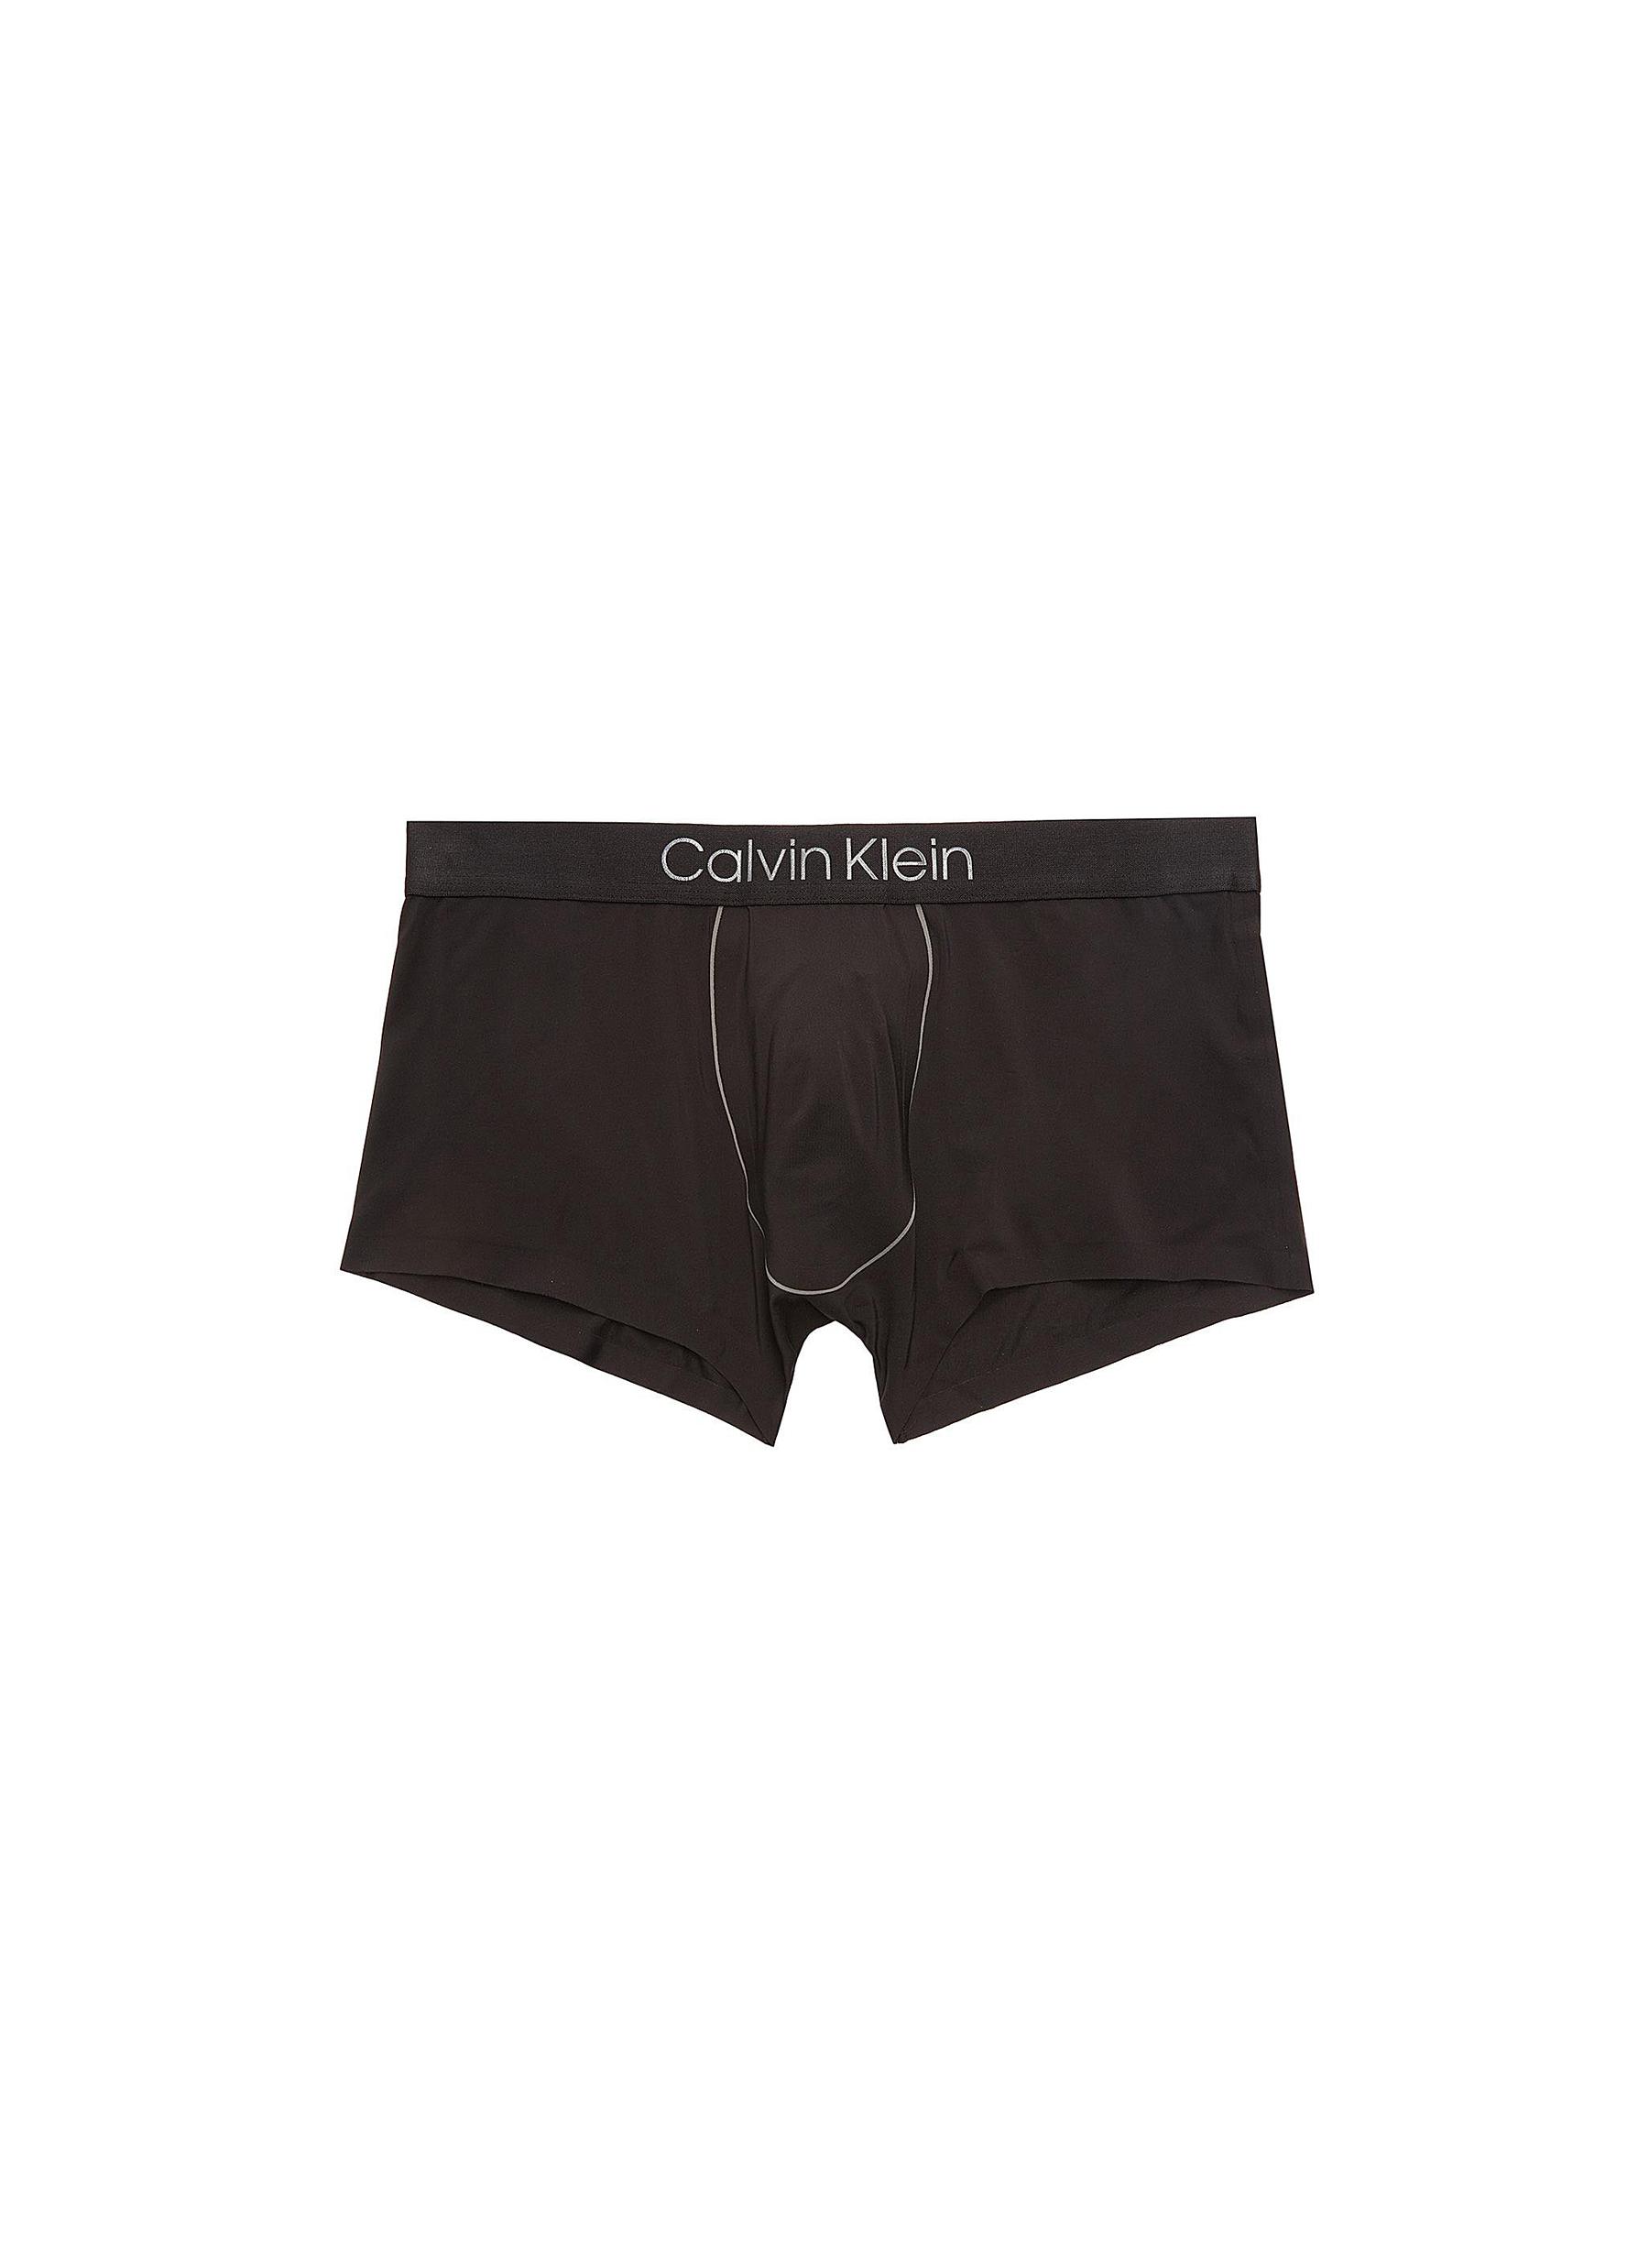 calvin klein black boxer shorts